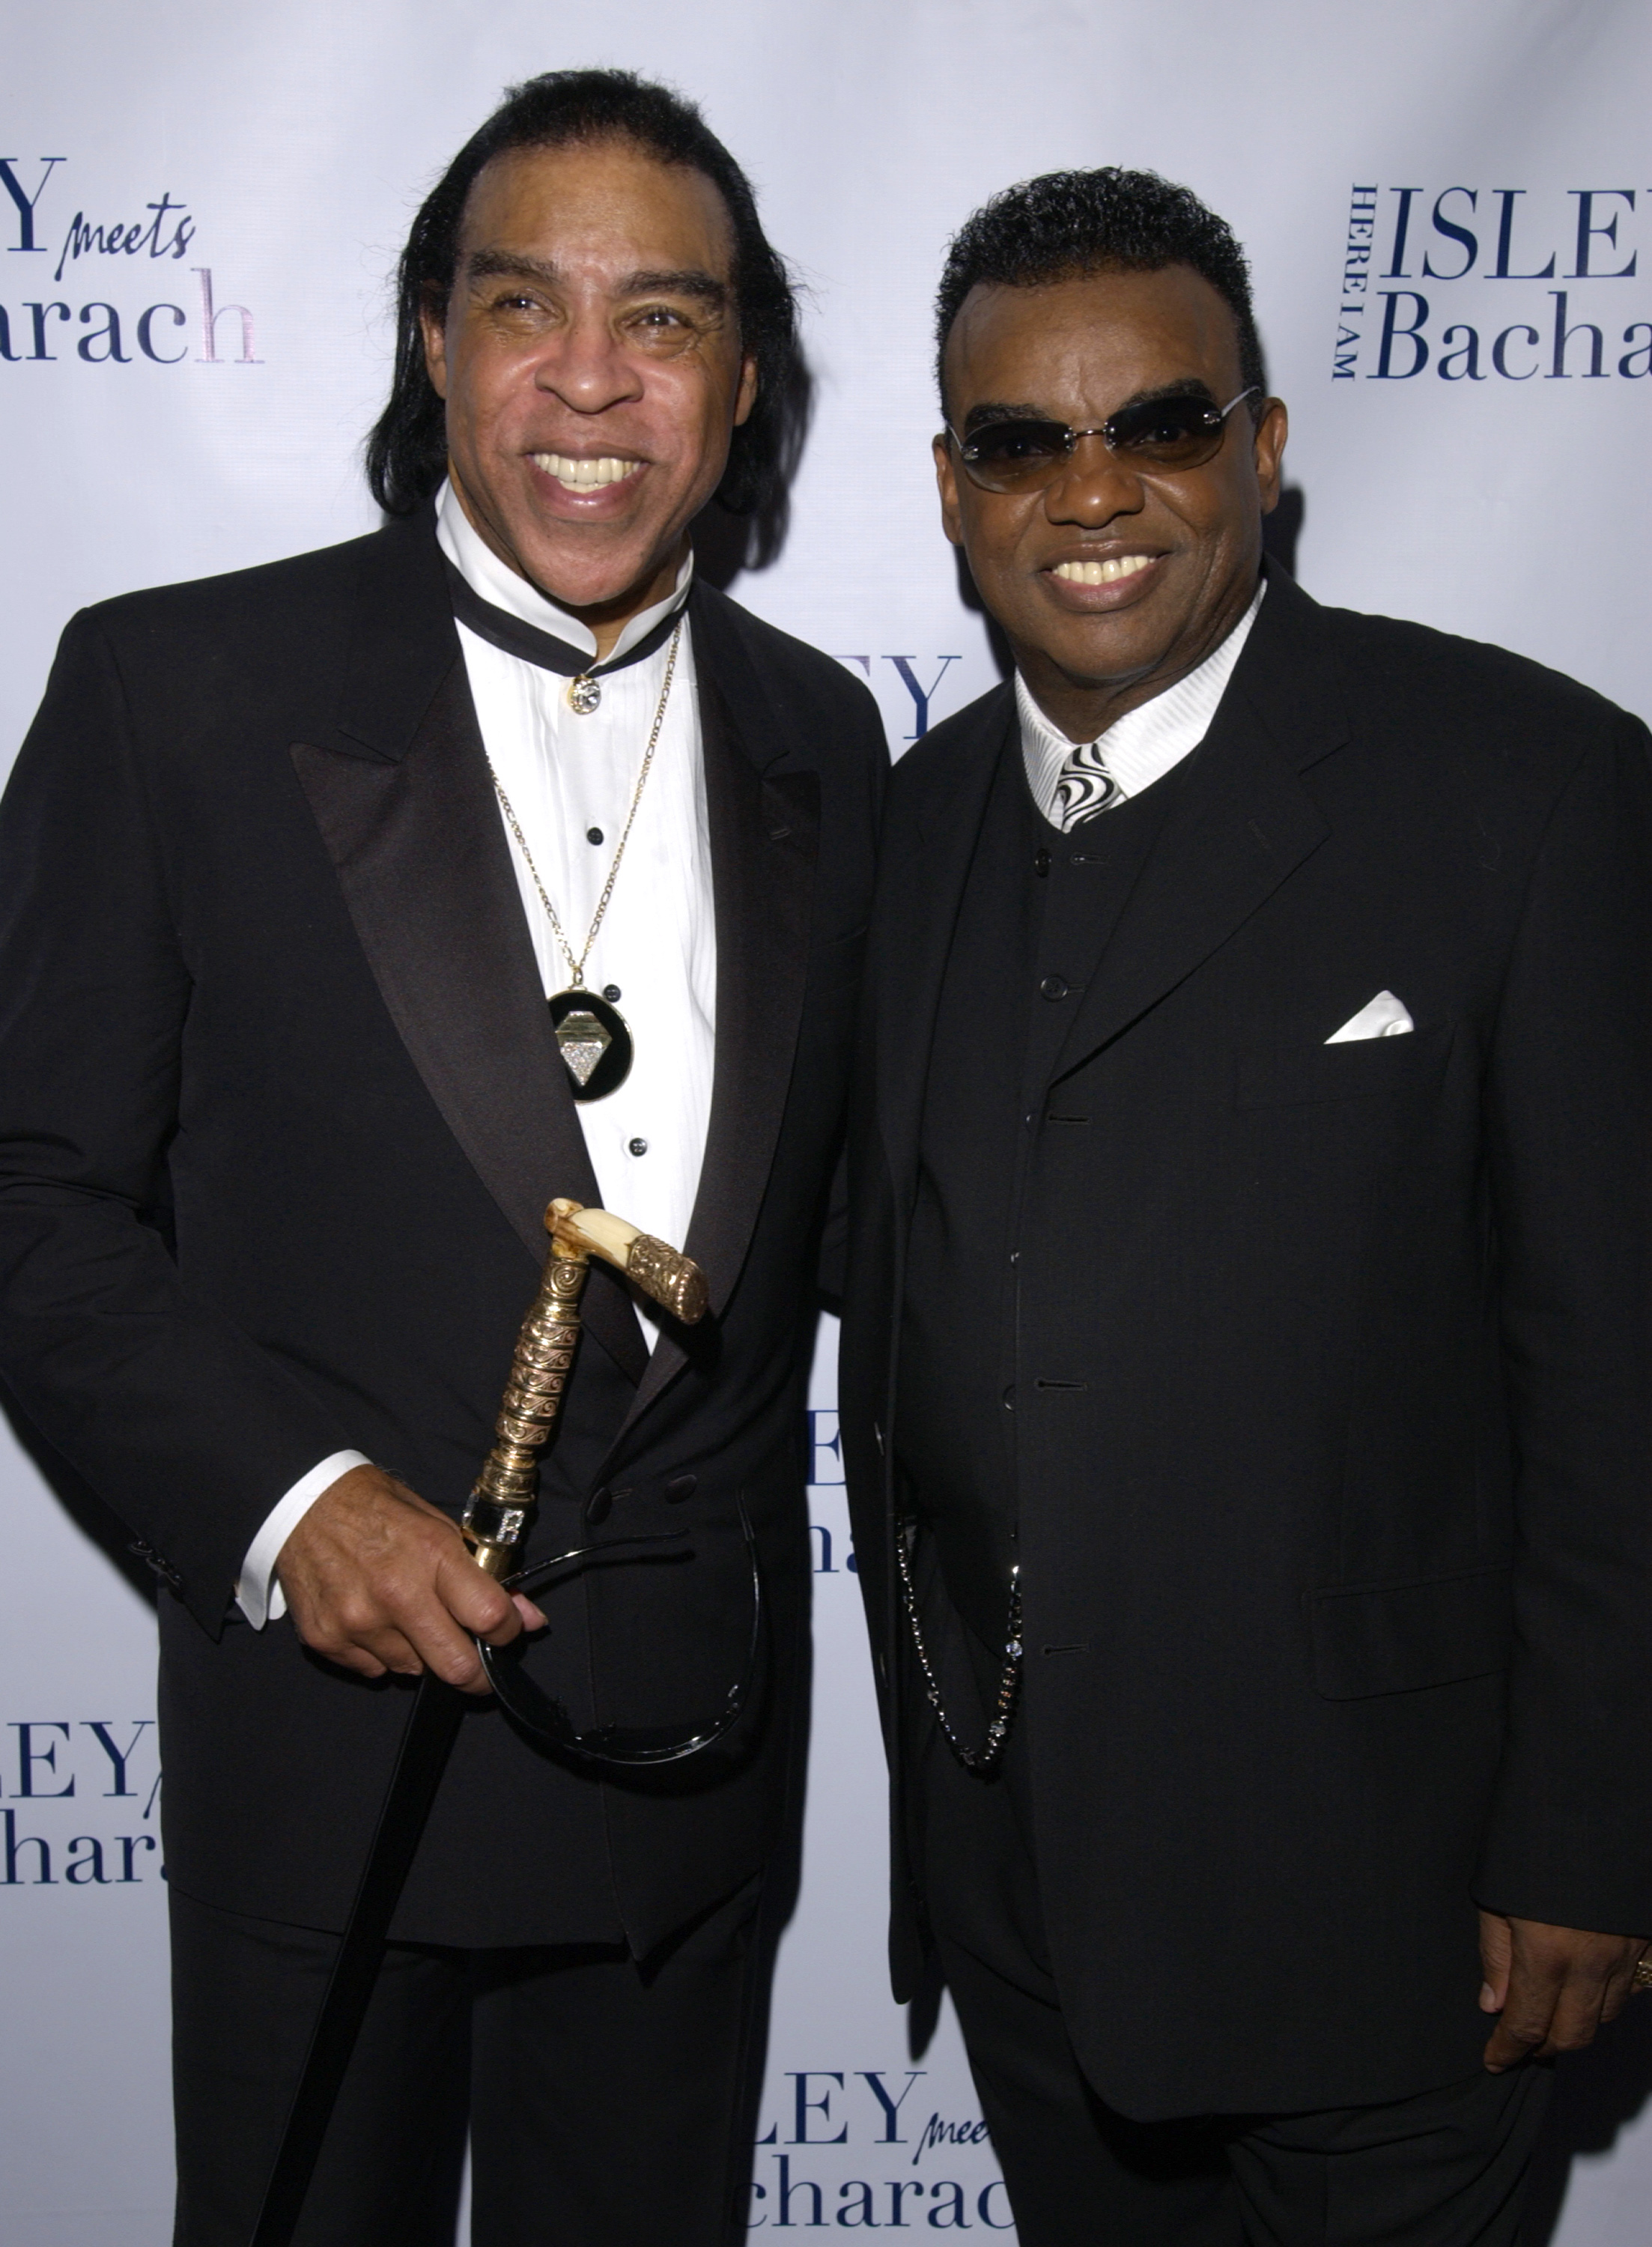 Rudolph et Ronald Isley à la soirée de sortie du disque "Isley Meets Bacharach" à New York en 2003 | Source : Getty Images